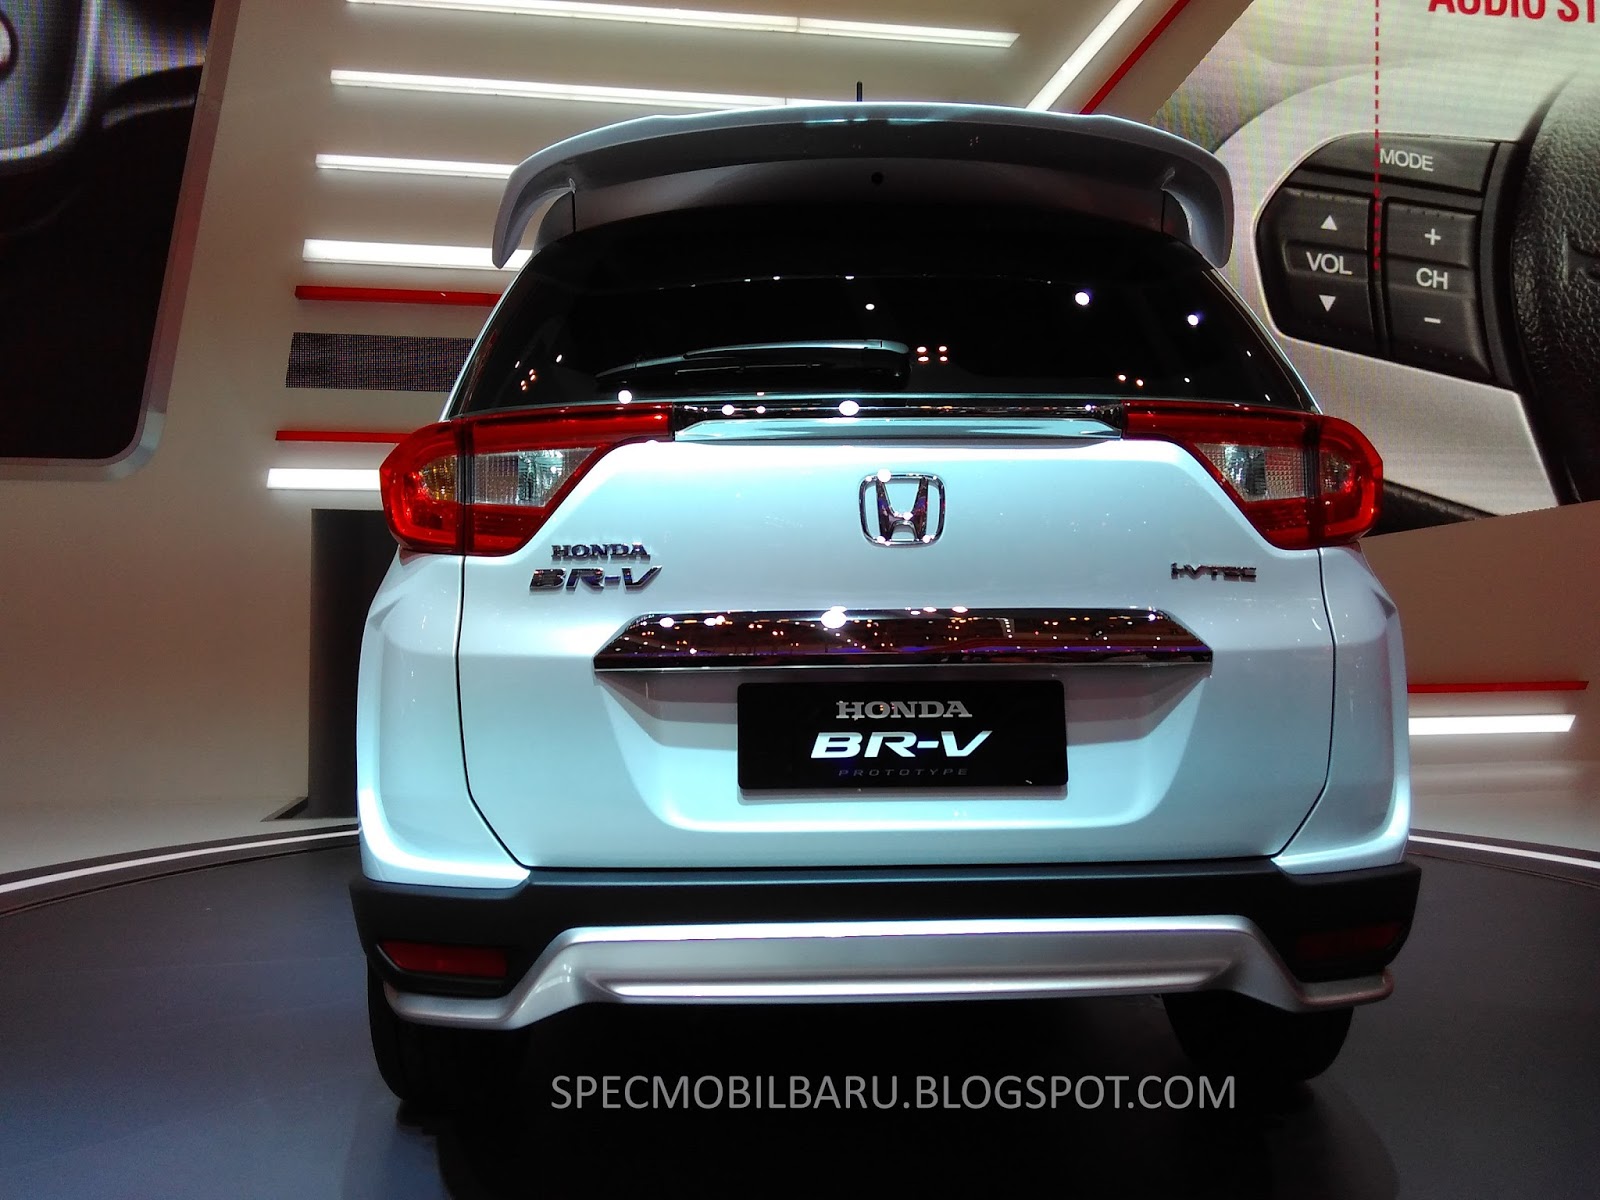 Honda BR-V Specification